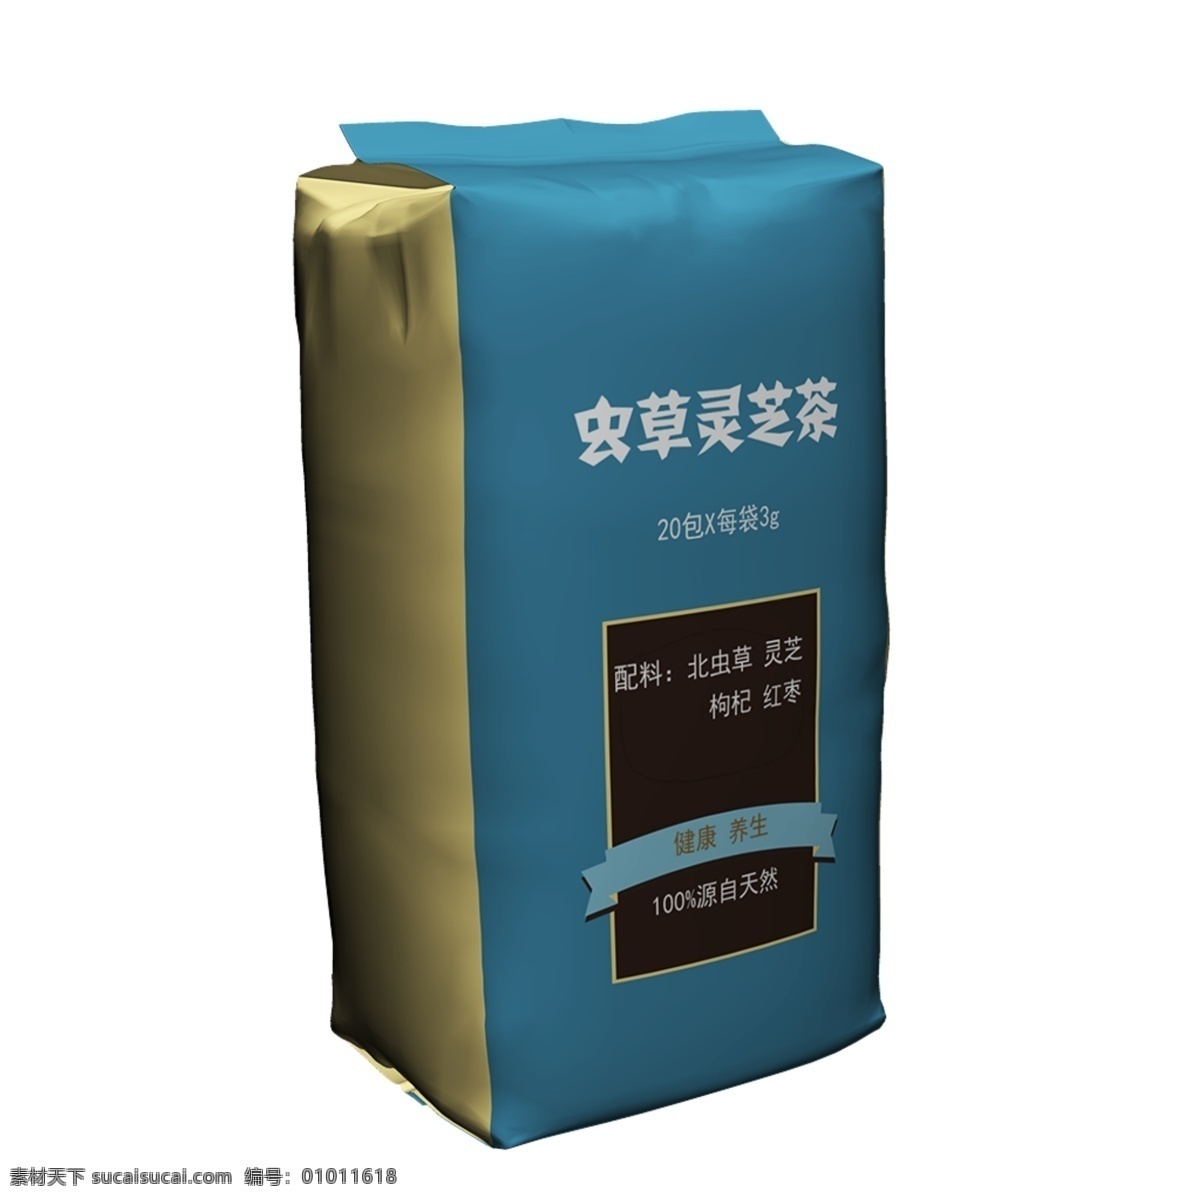 虫草 灵芝 茶 包装设计 外 茶叶包装设计 虫草包装设计 灵芝茶包装 茶叶外包装 茶叶盒设计